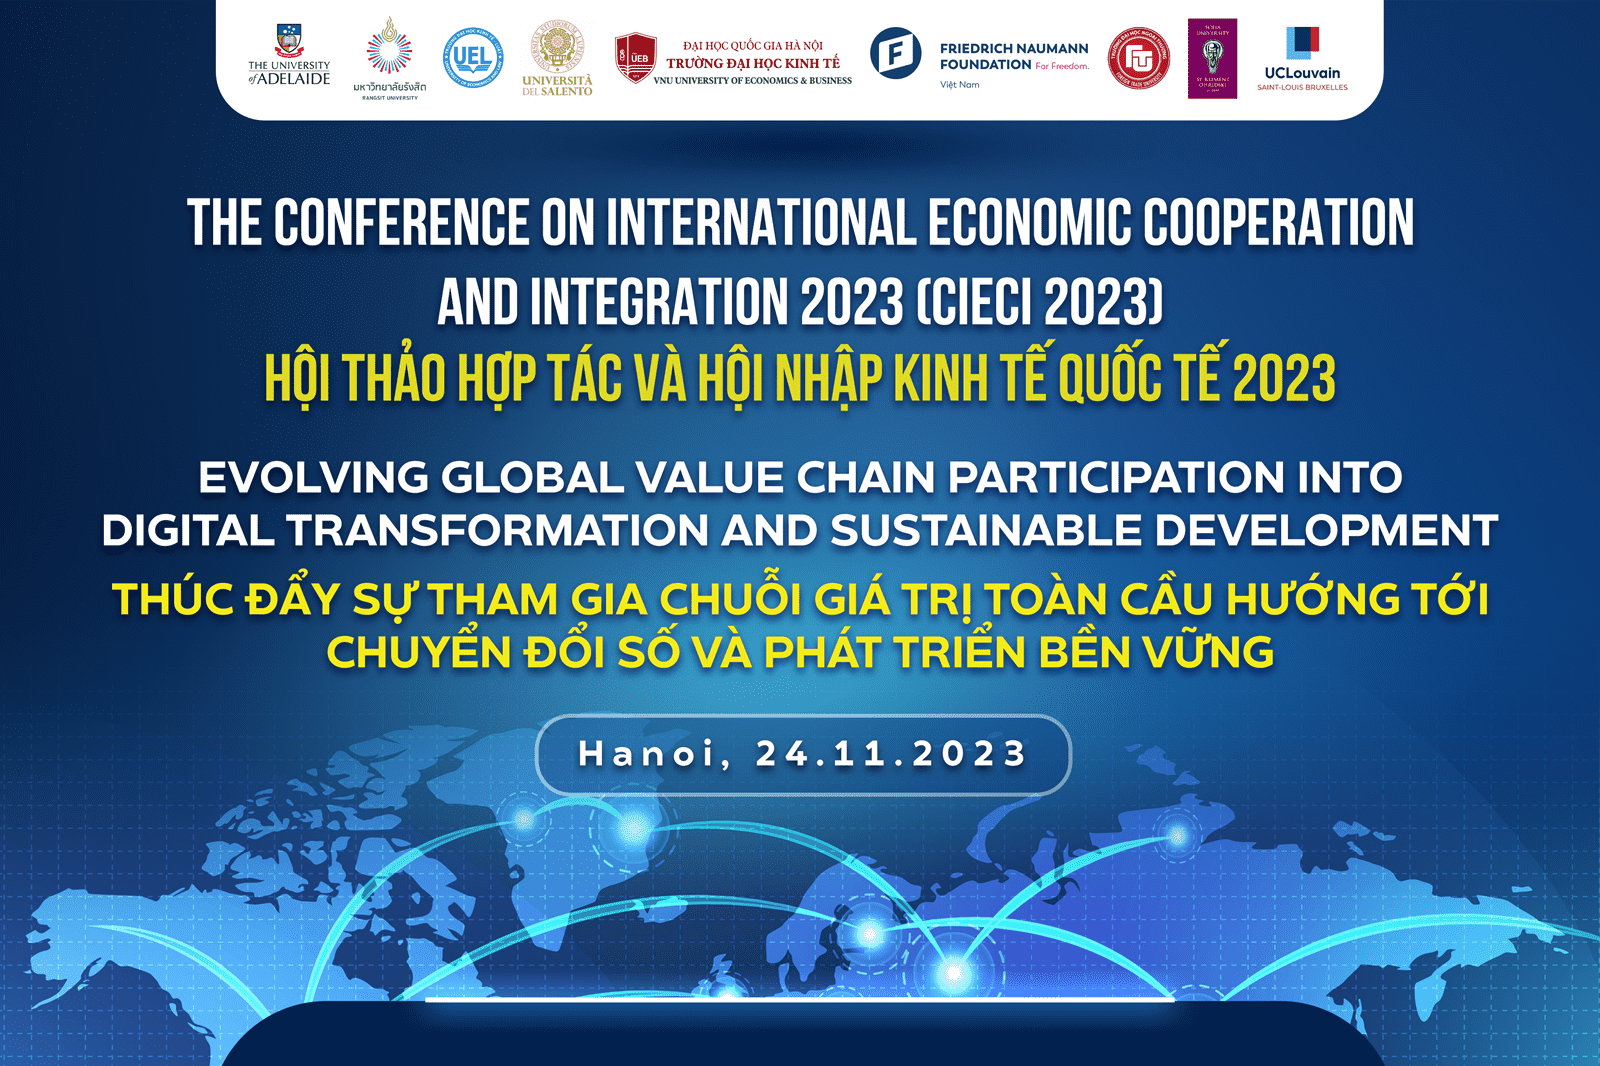 UEB  tổ chức Hội thảo quốc tế CIECI 2023 với chủ đề “Thúc đẩy sự tham gia Chuỗi giá trị toàn cầu hướng tới chuyển đổi số và phát triển bền vững”